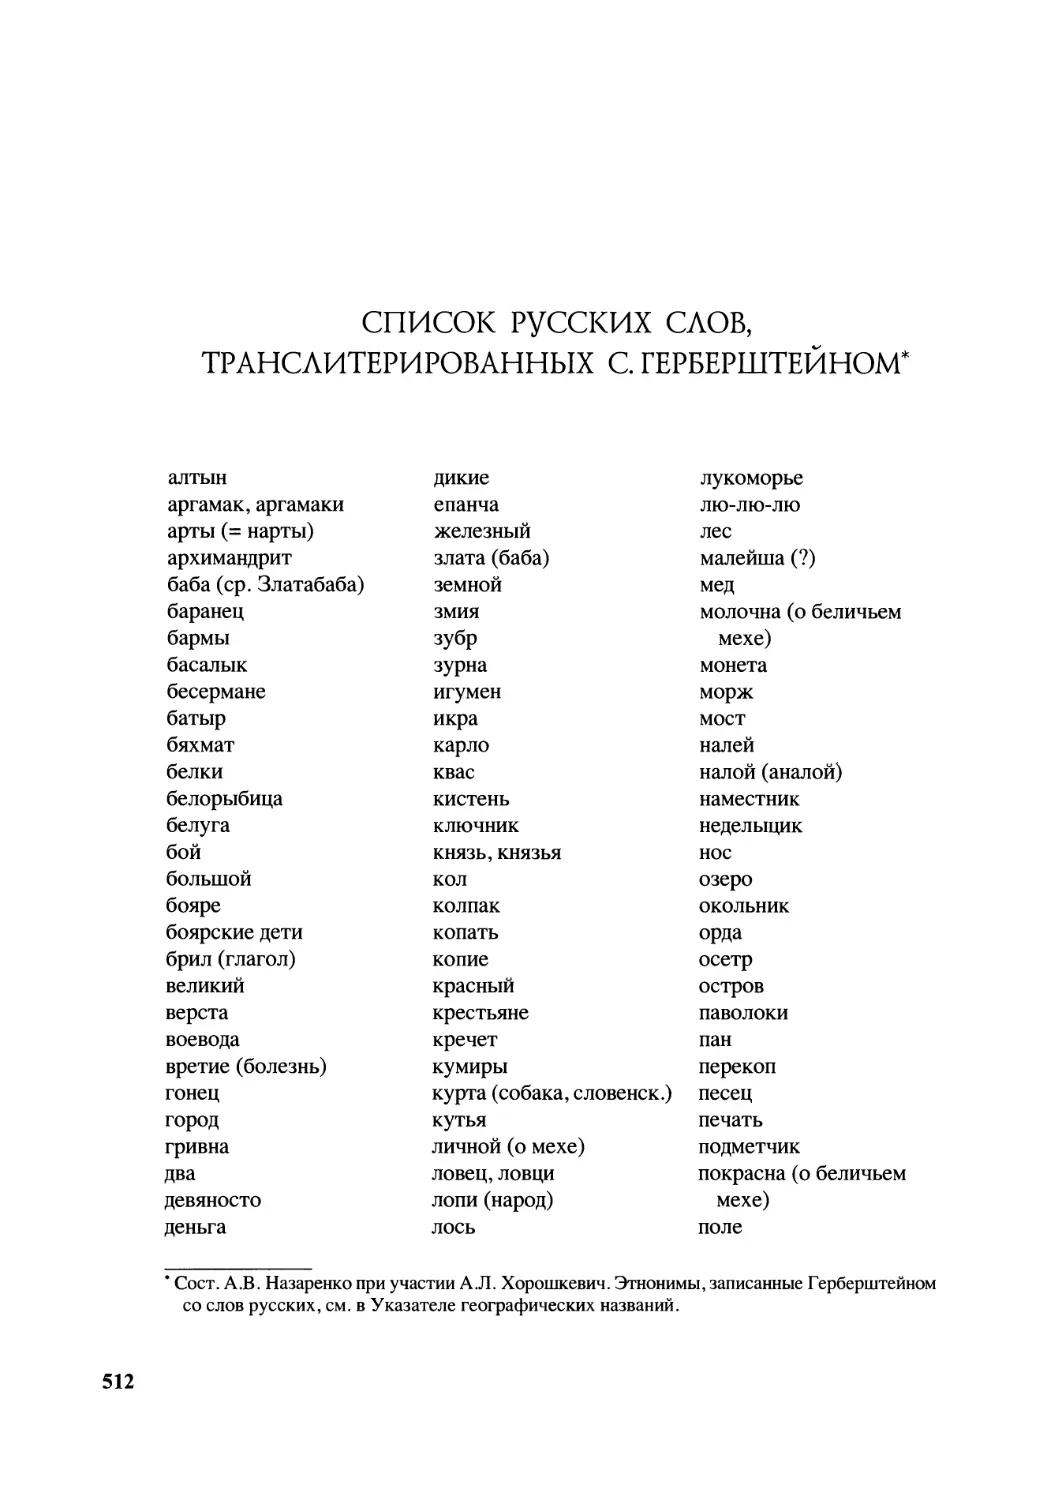 Список русских слов, транслитерированных С. Герберштейном